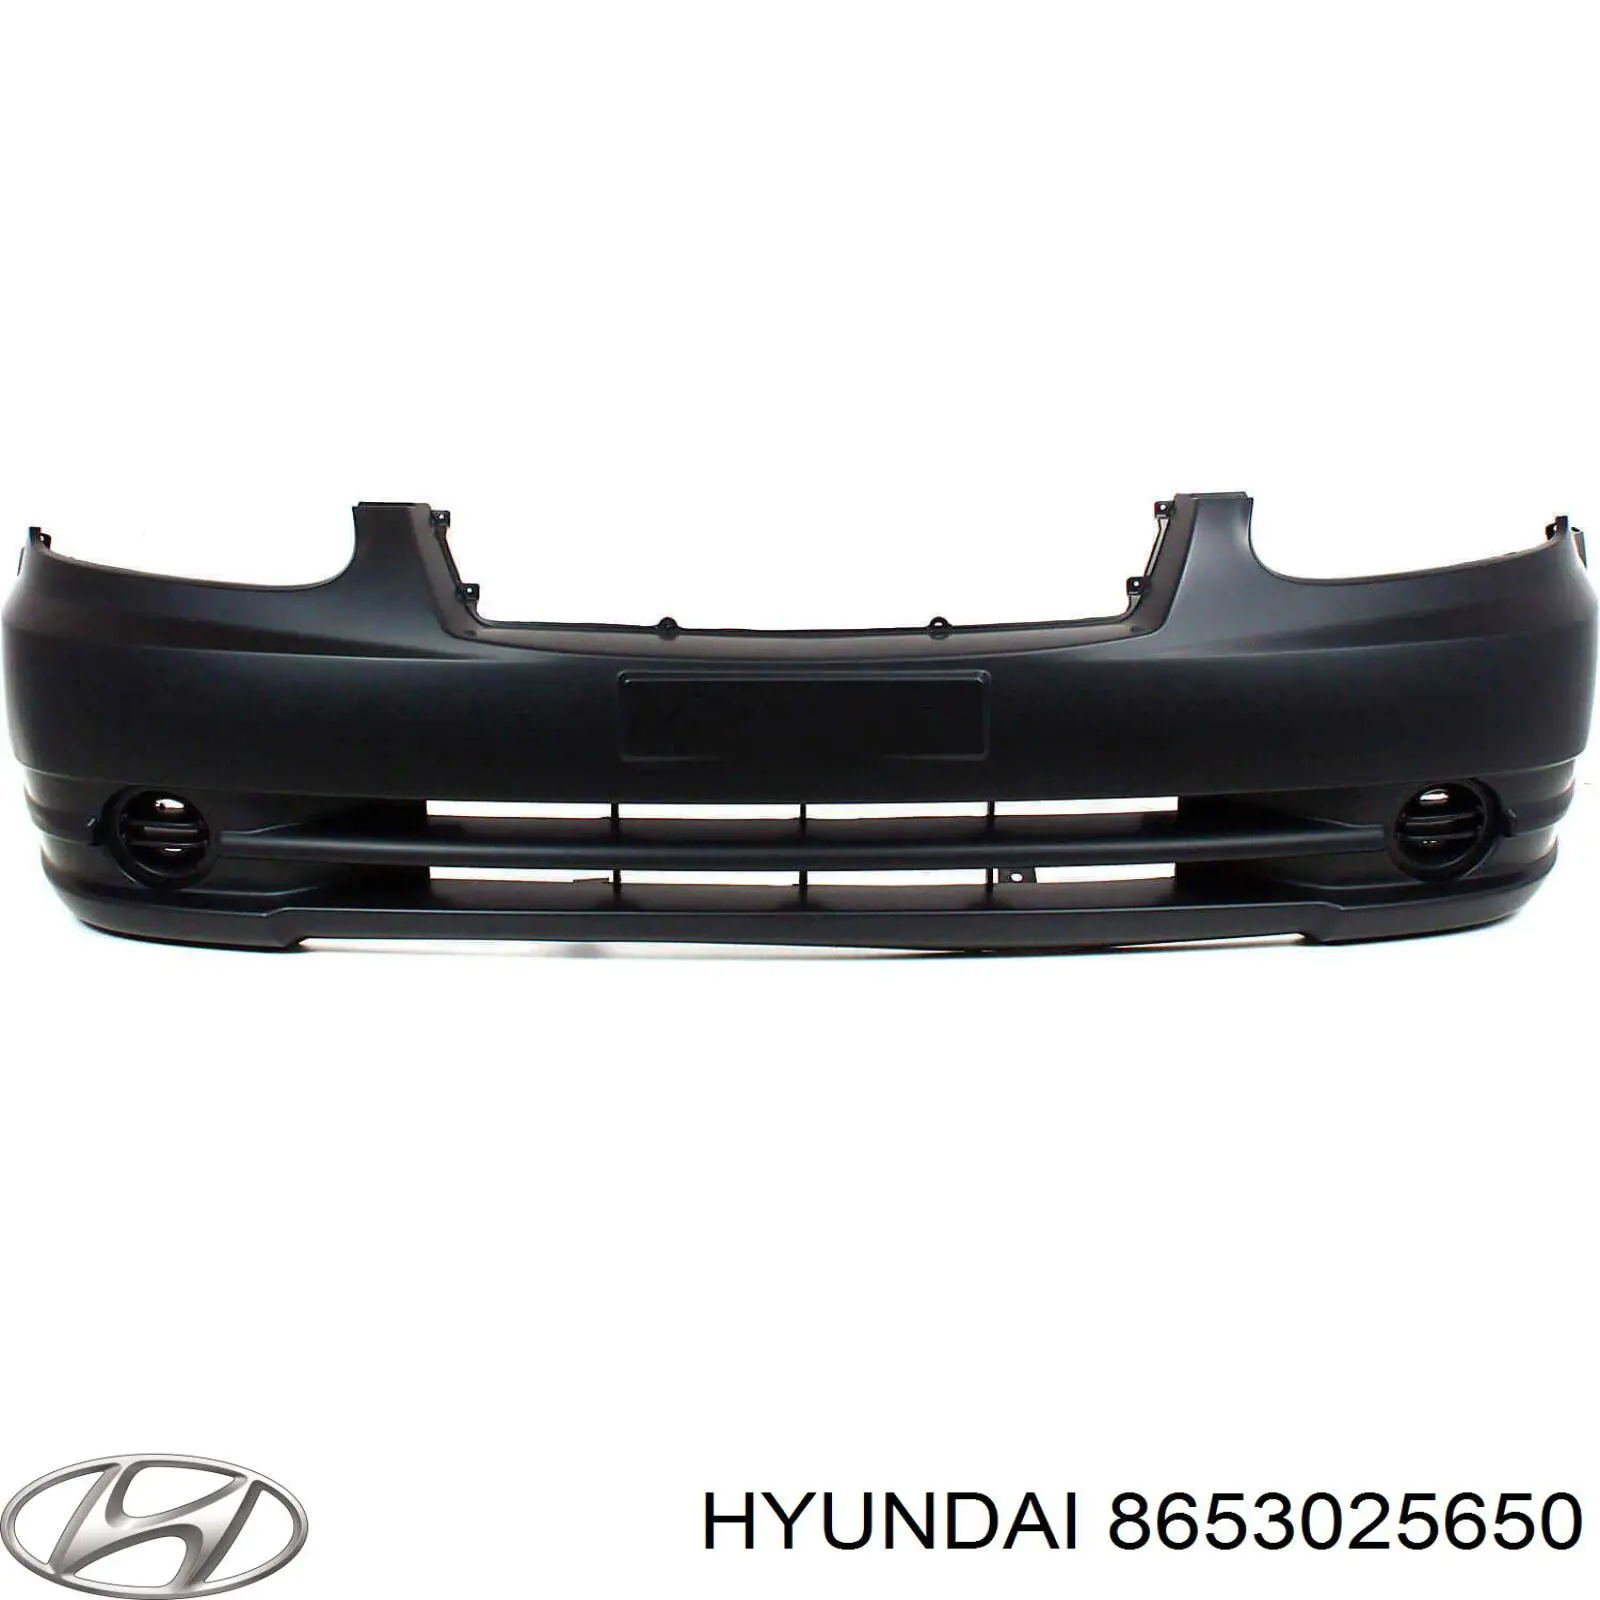 Усилитель переднего бампера Hyundai Accent (Хундай Акцент)